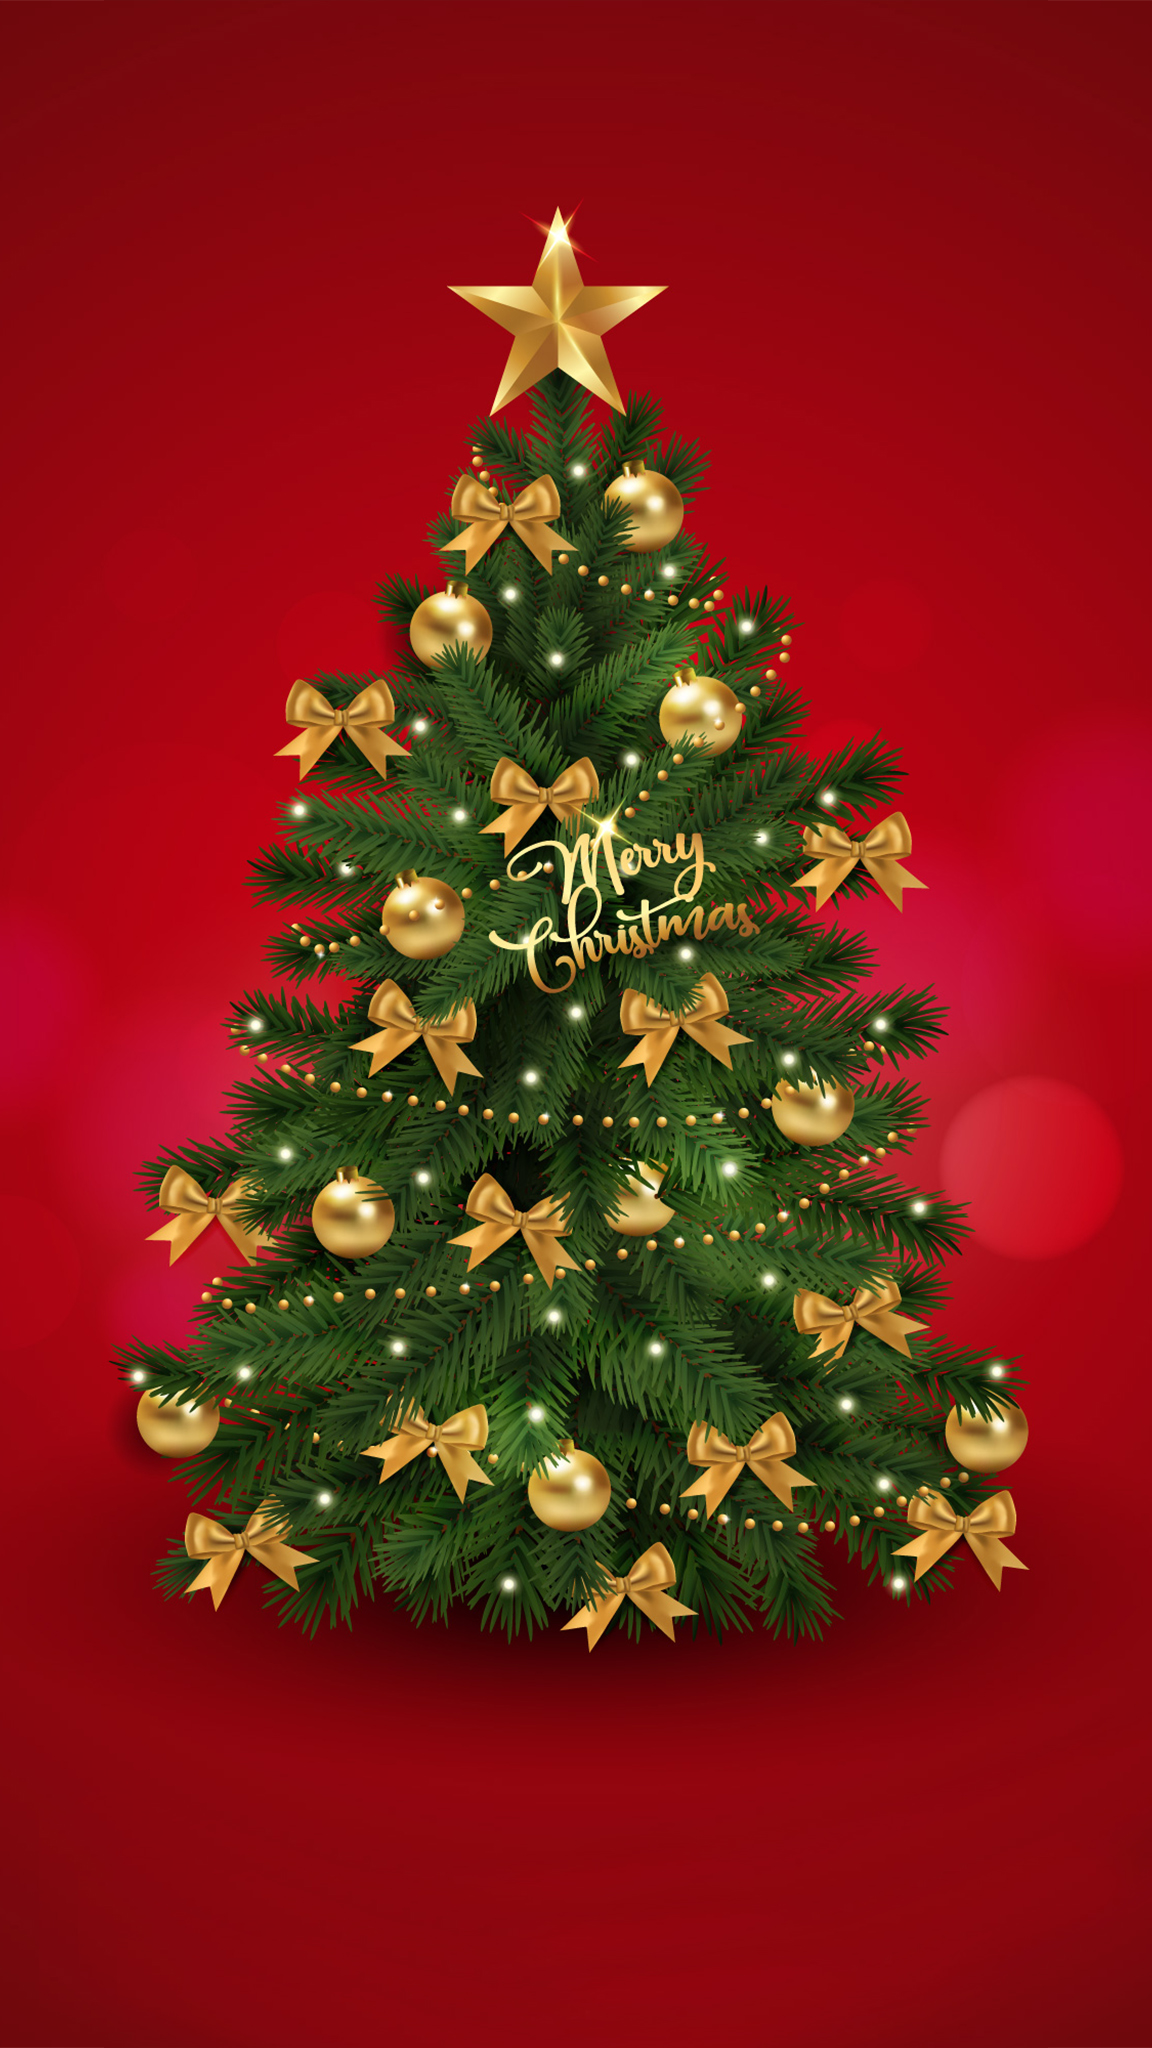 Hãy chiêm ngưỡng những hình ảnh cây thông Noel đầy màu sắc và tràn đầy niềm vui phiên bản mới nhất! Chúc mừng Giáng sinh!